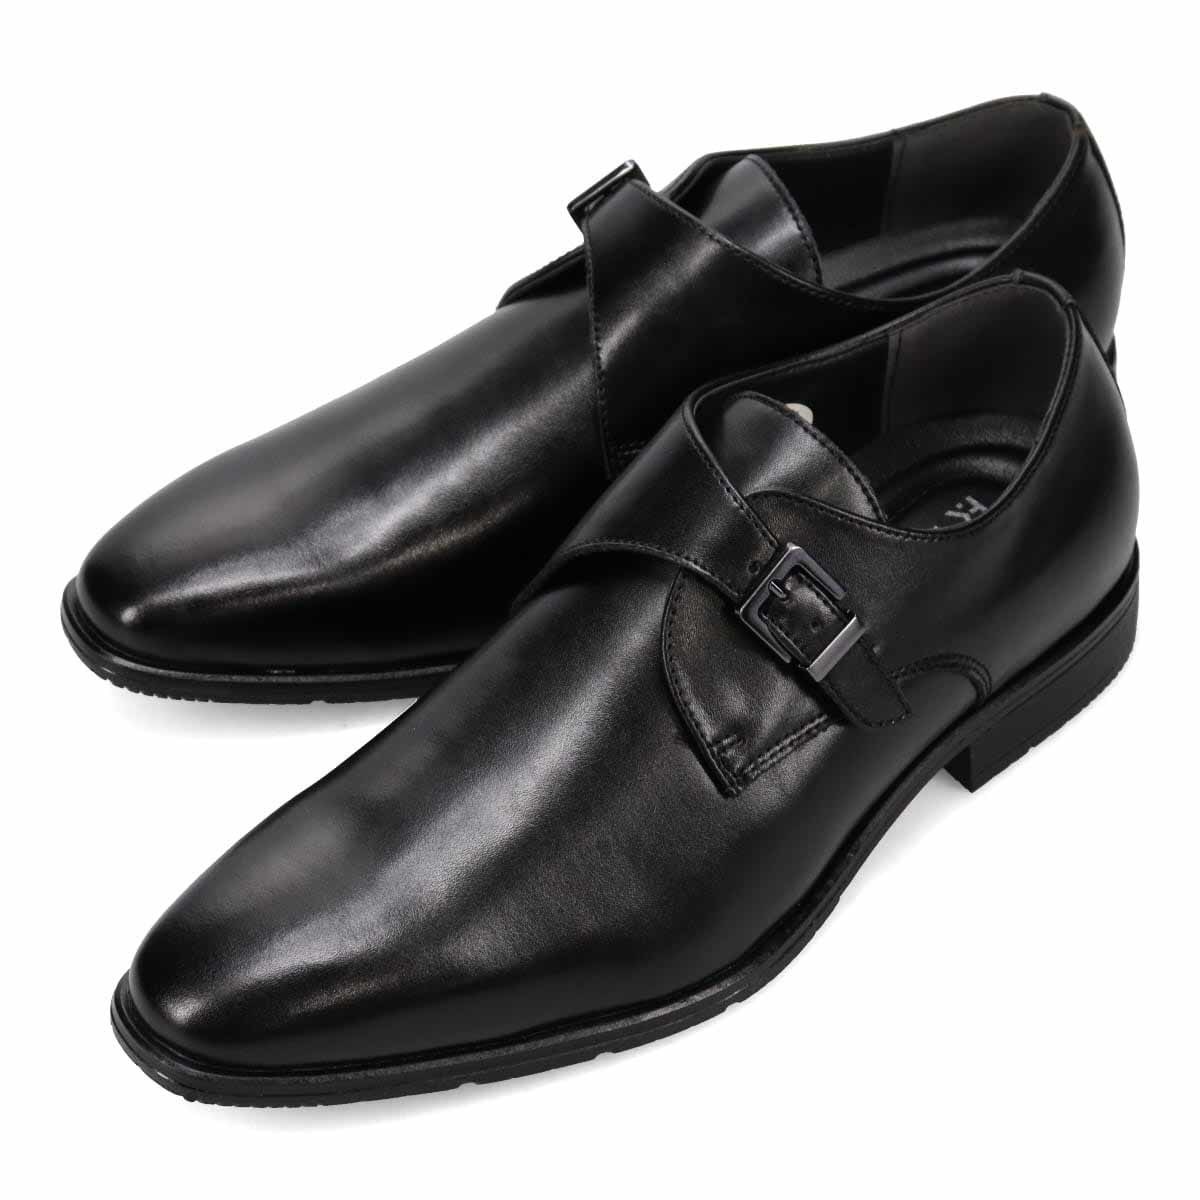 ▲ヒロコ コシノ モンクストラップビジネスシューズ HR7003 本革 メンズ 紳士靴 革靴 ブラック Black 黒 25.0cm (0910010694-bk-s250)